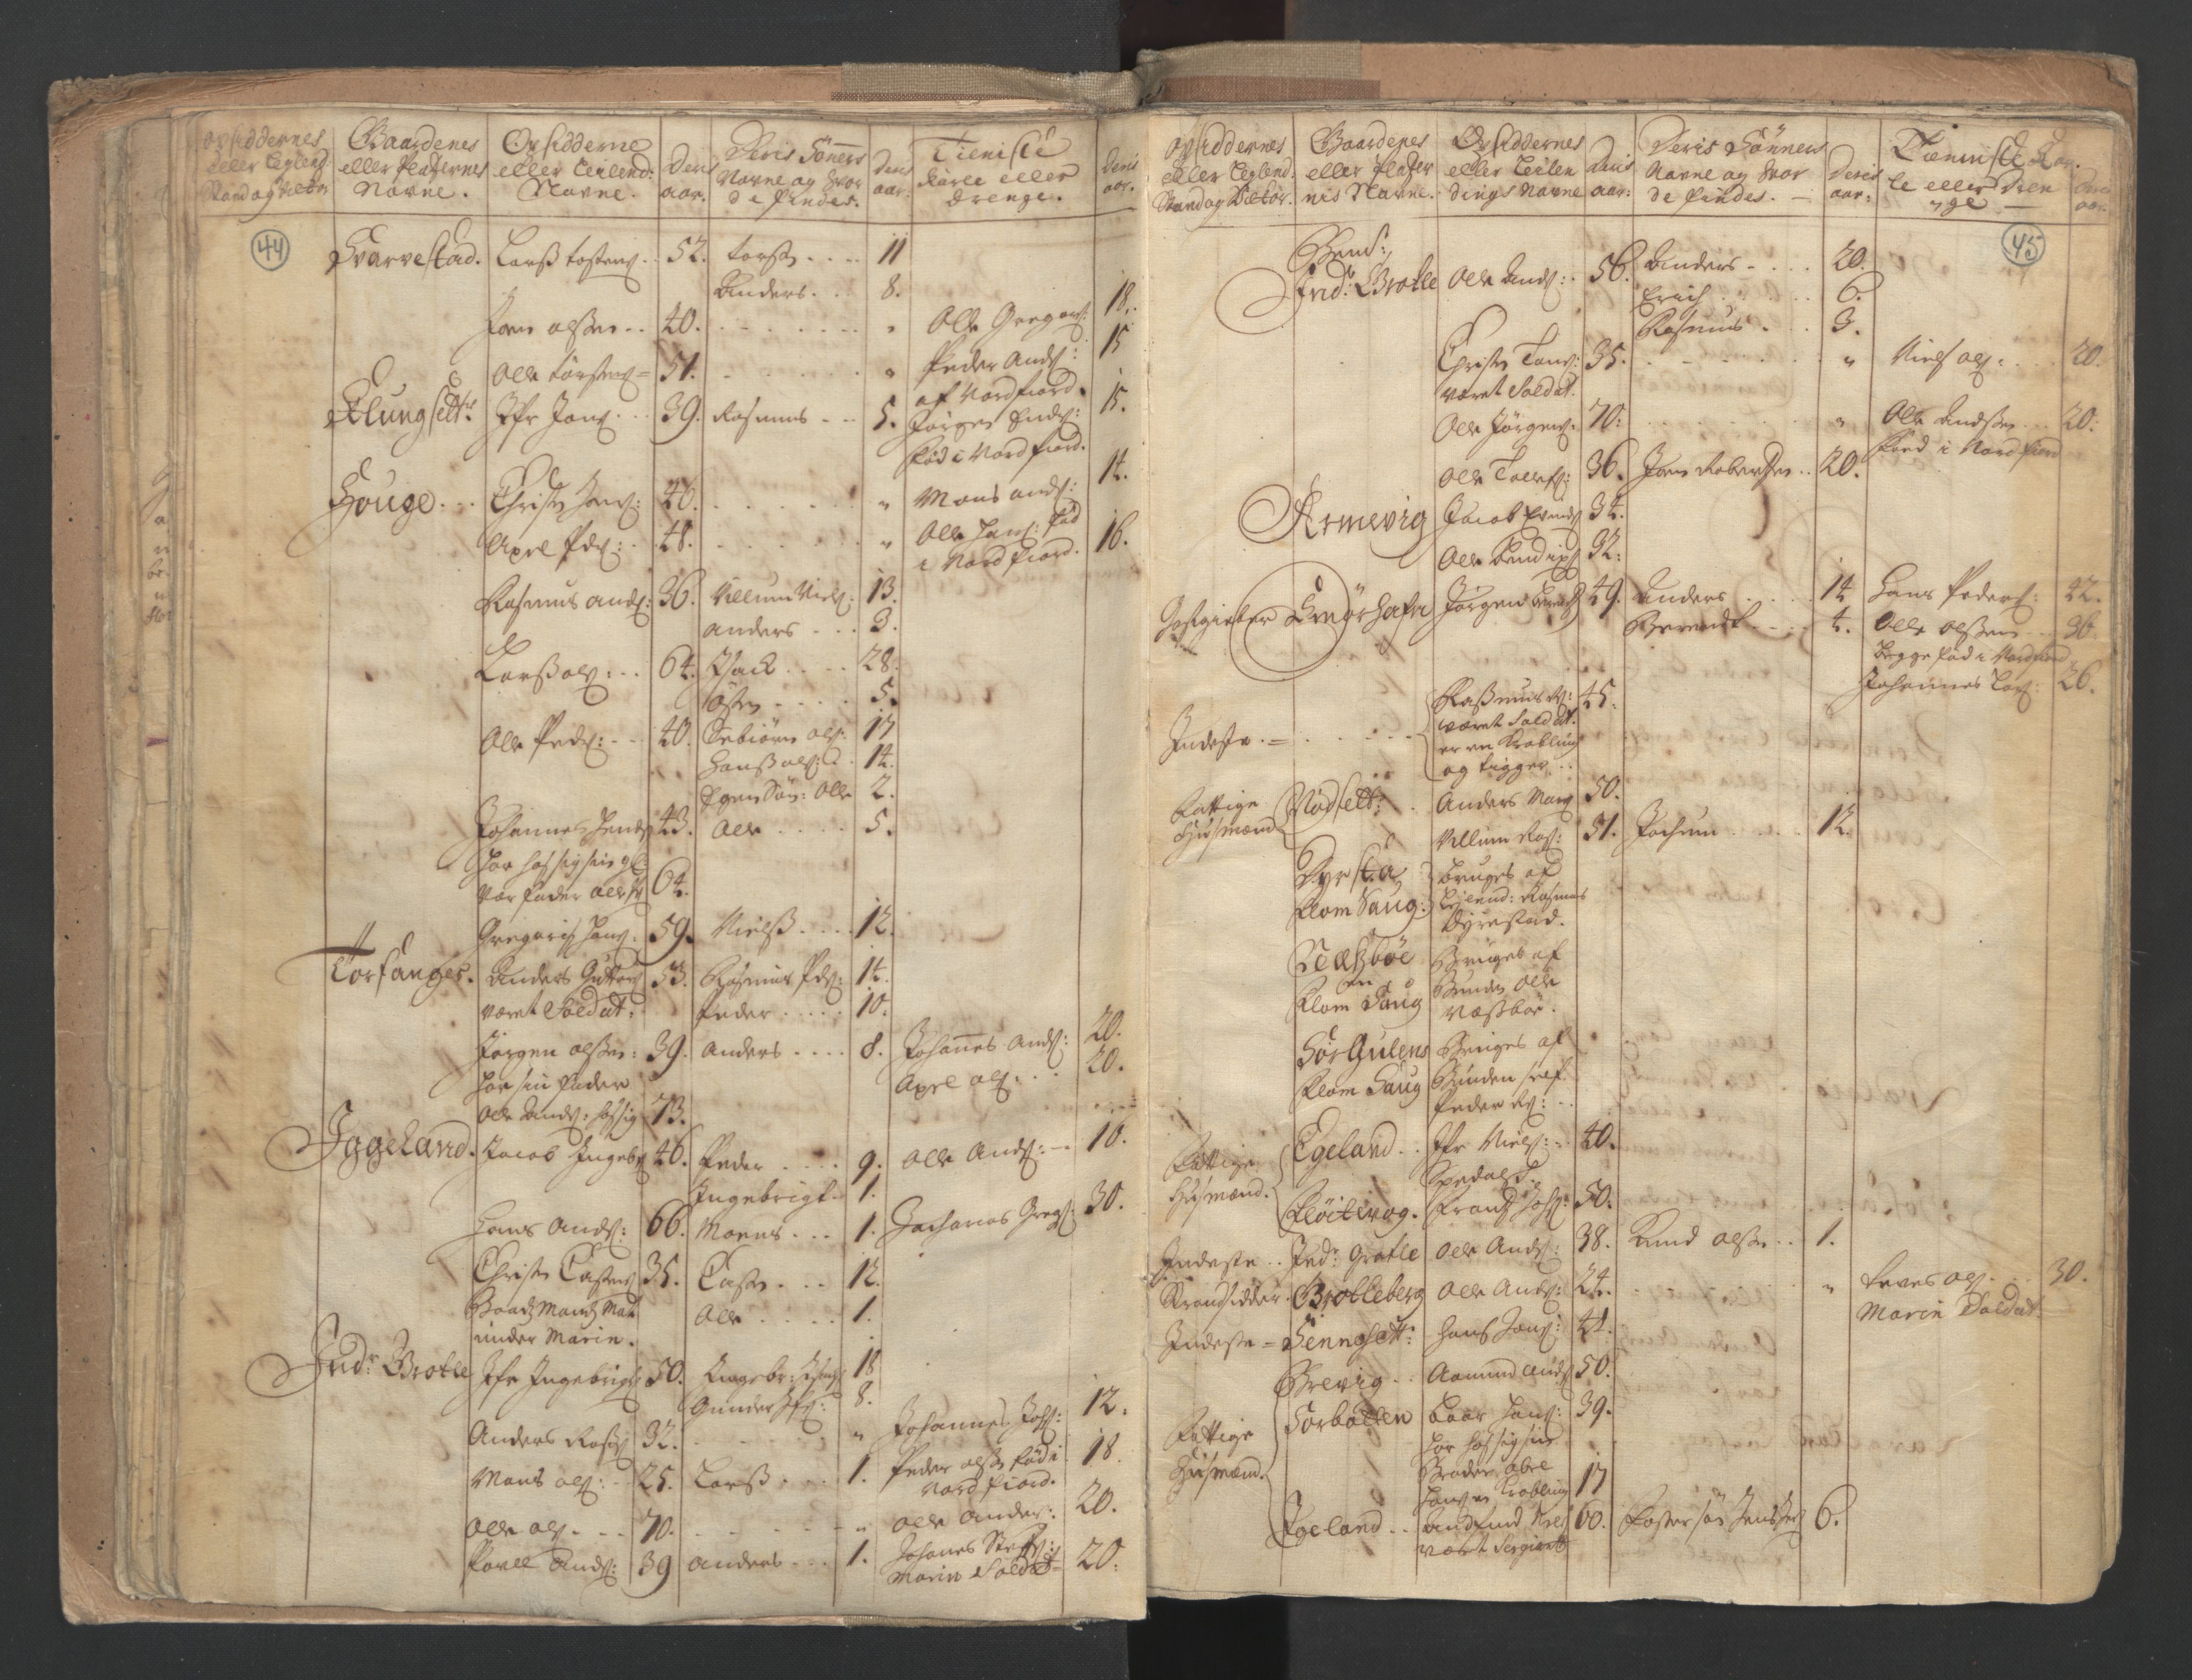 RA, Manntallet 1701, nr. 9: Sunnfjord fogderi, Nordfjord fogderi og Svanø birk, 1701, s. 44-45